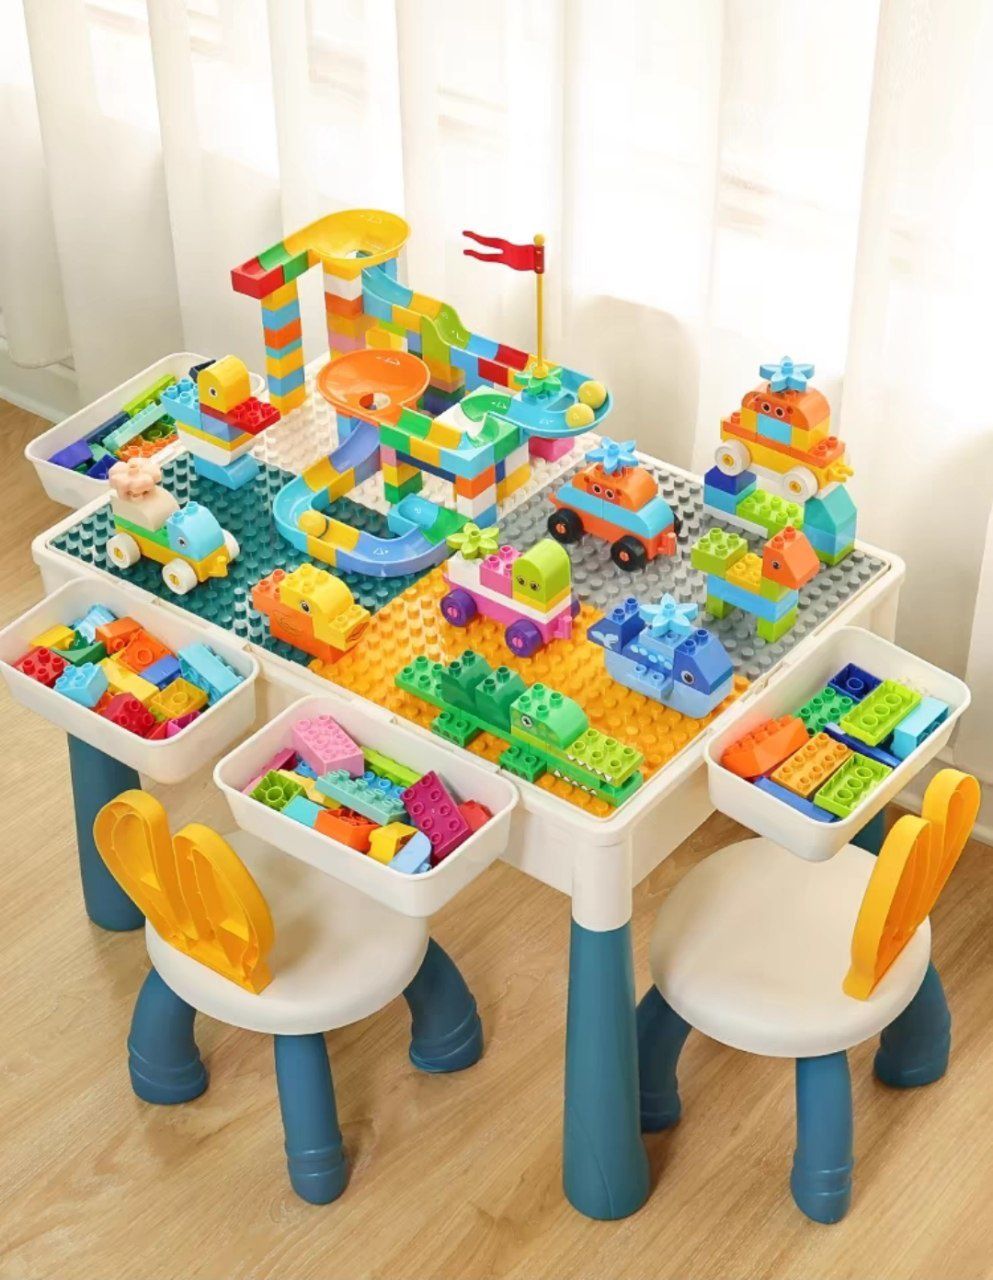 Лего столик.
Можно использовать для строительства из кубиков Лего, как